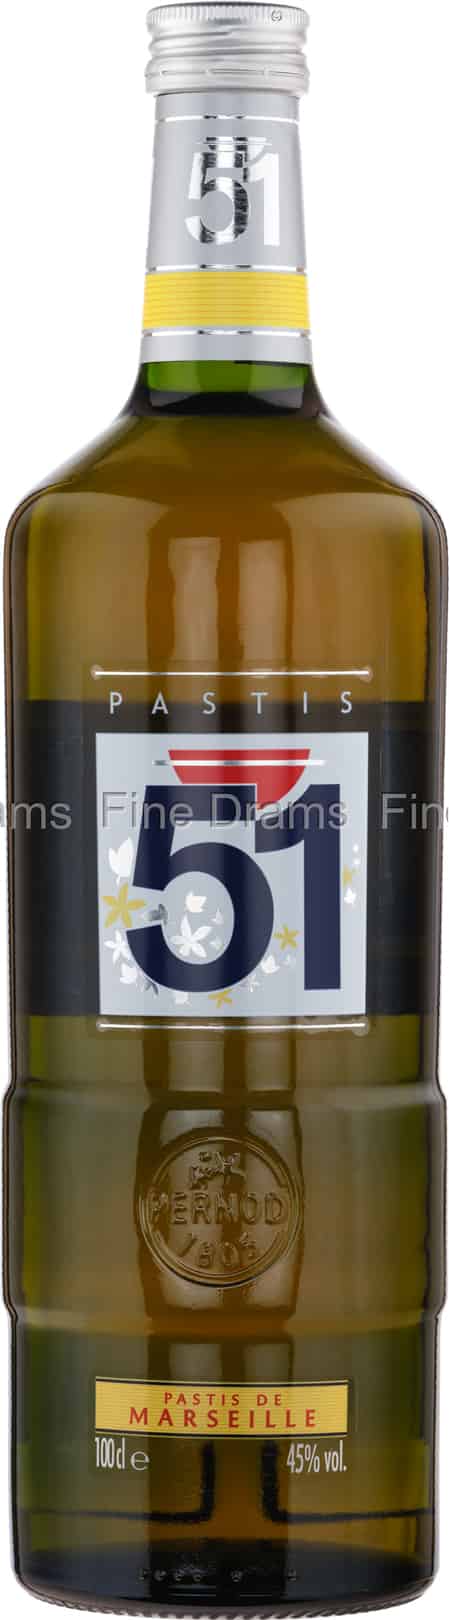 Pastis 51 (1 Liter)